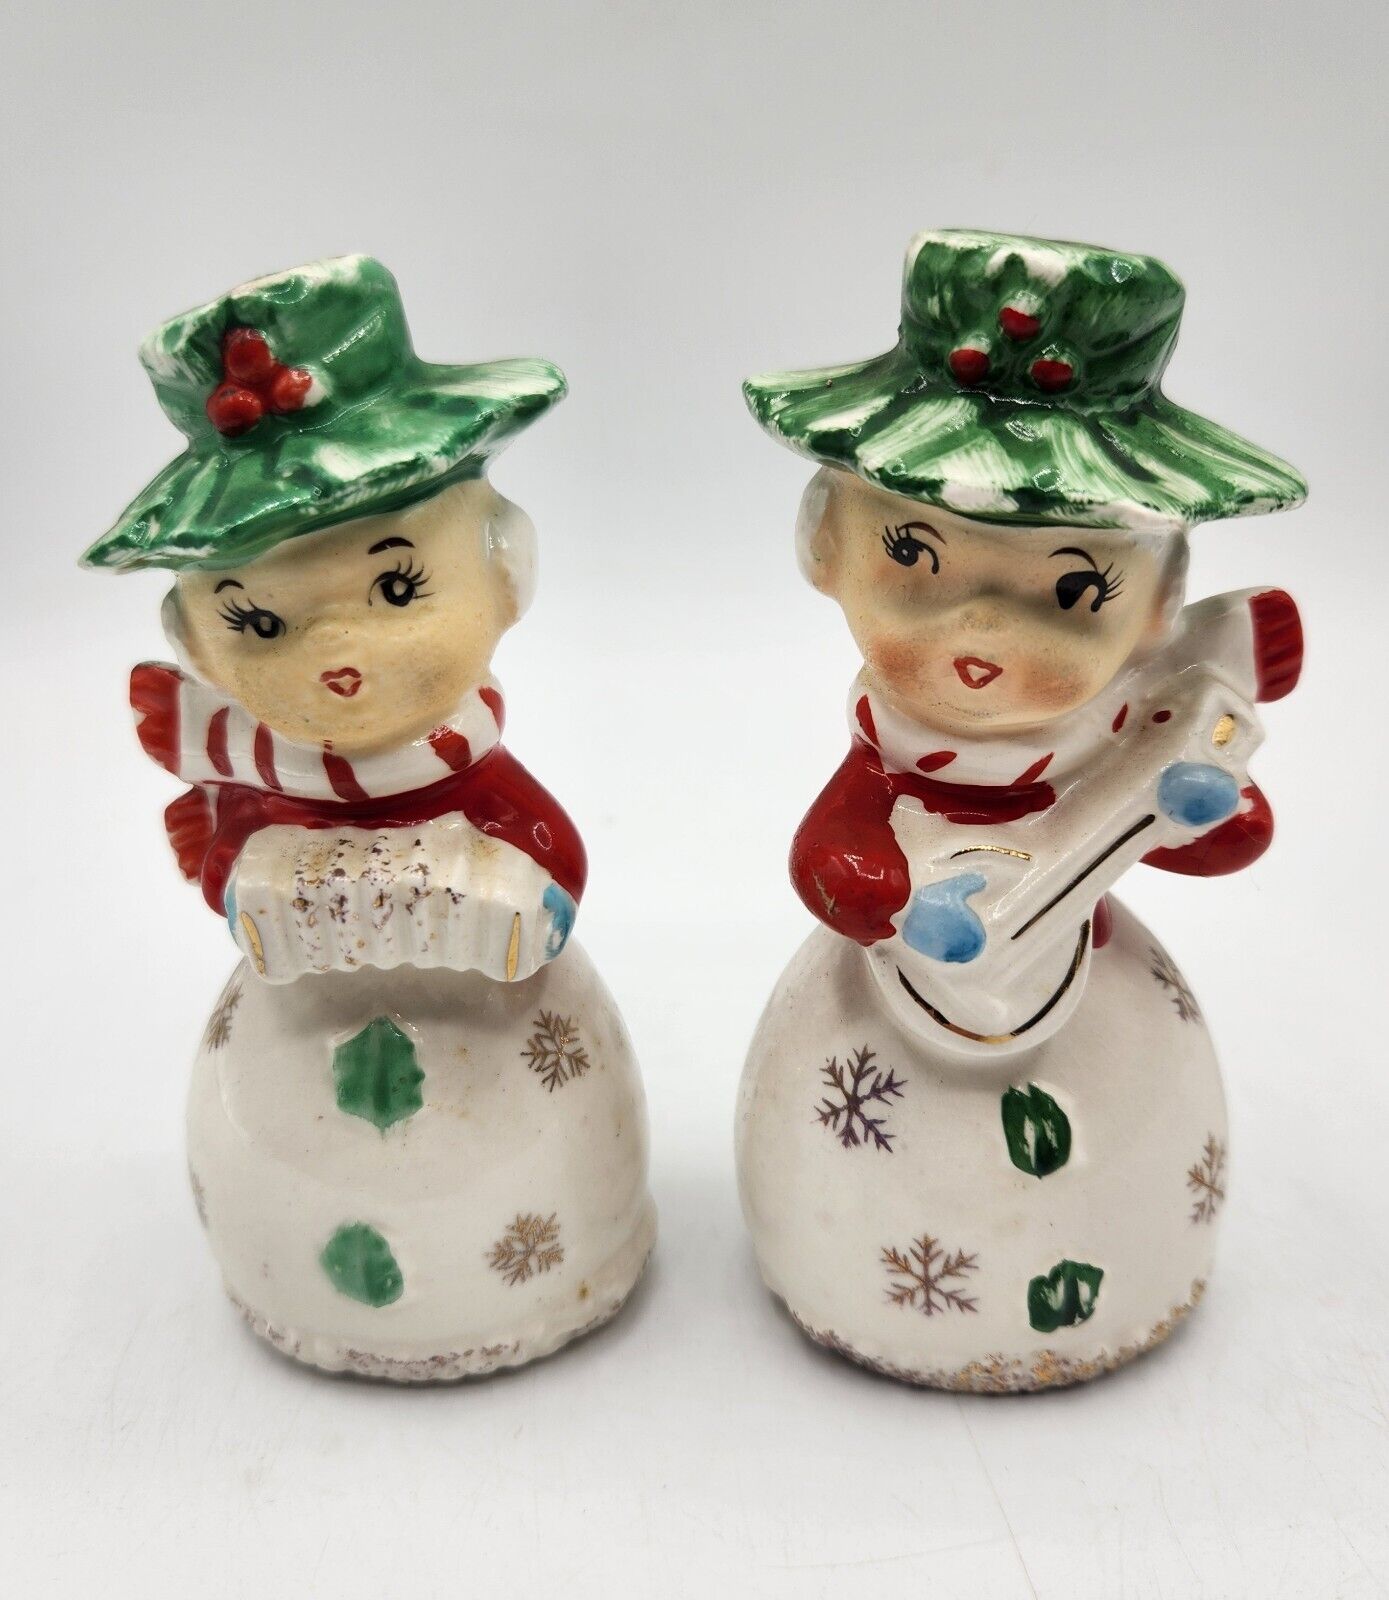 VTG 1950's Holly Girls Musical Christmas Salt Pepper Shakers Japan Banjo Kitschy